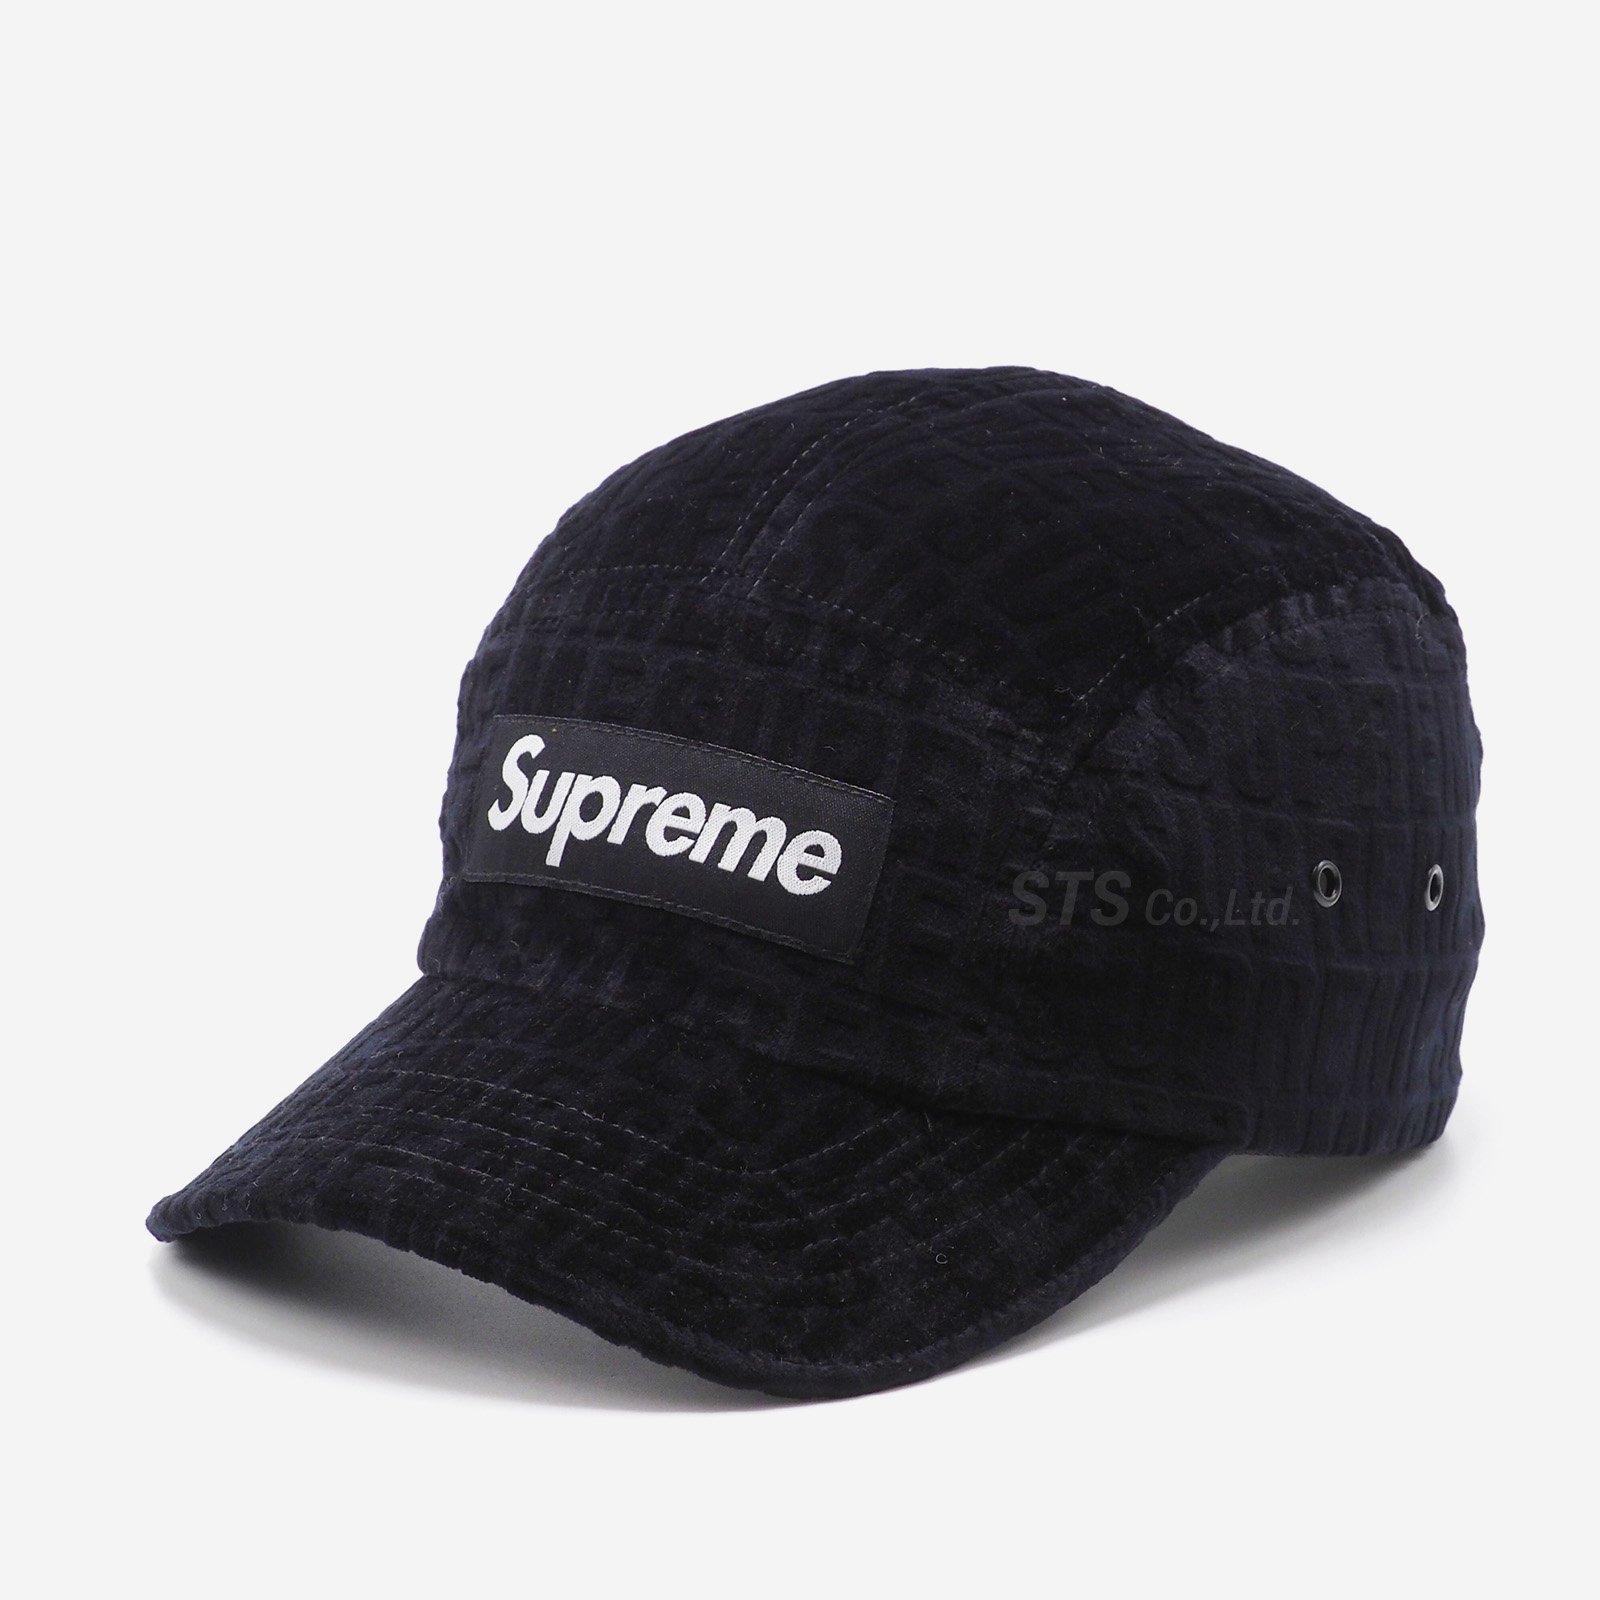 supreme velvet camp cap black